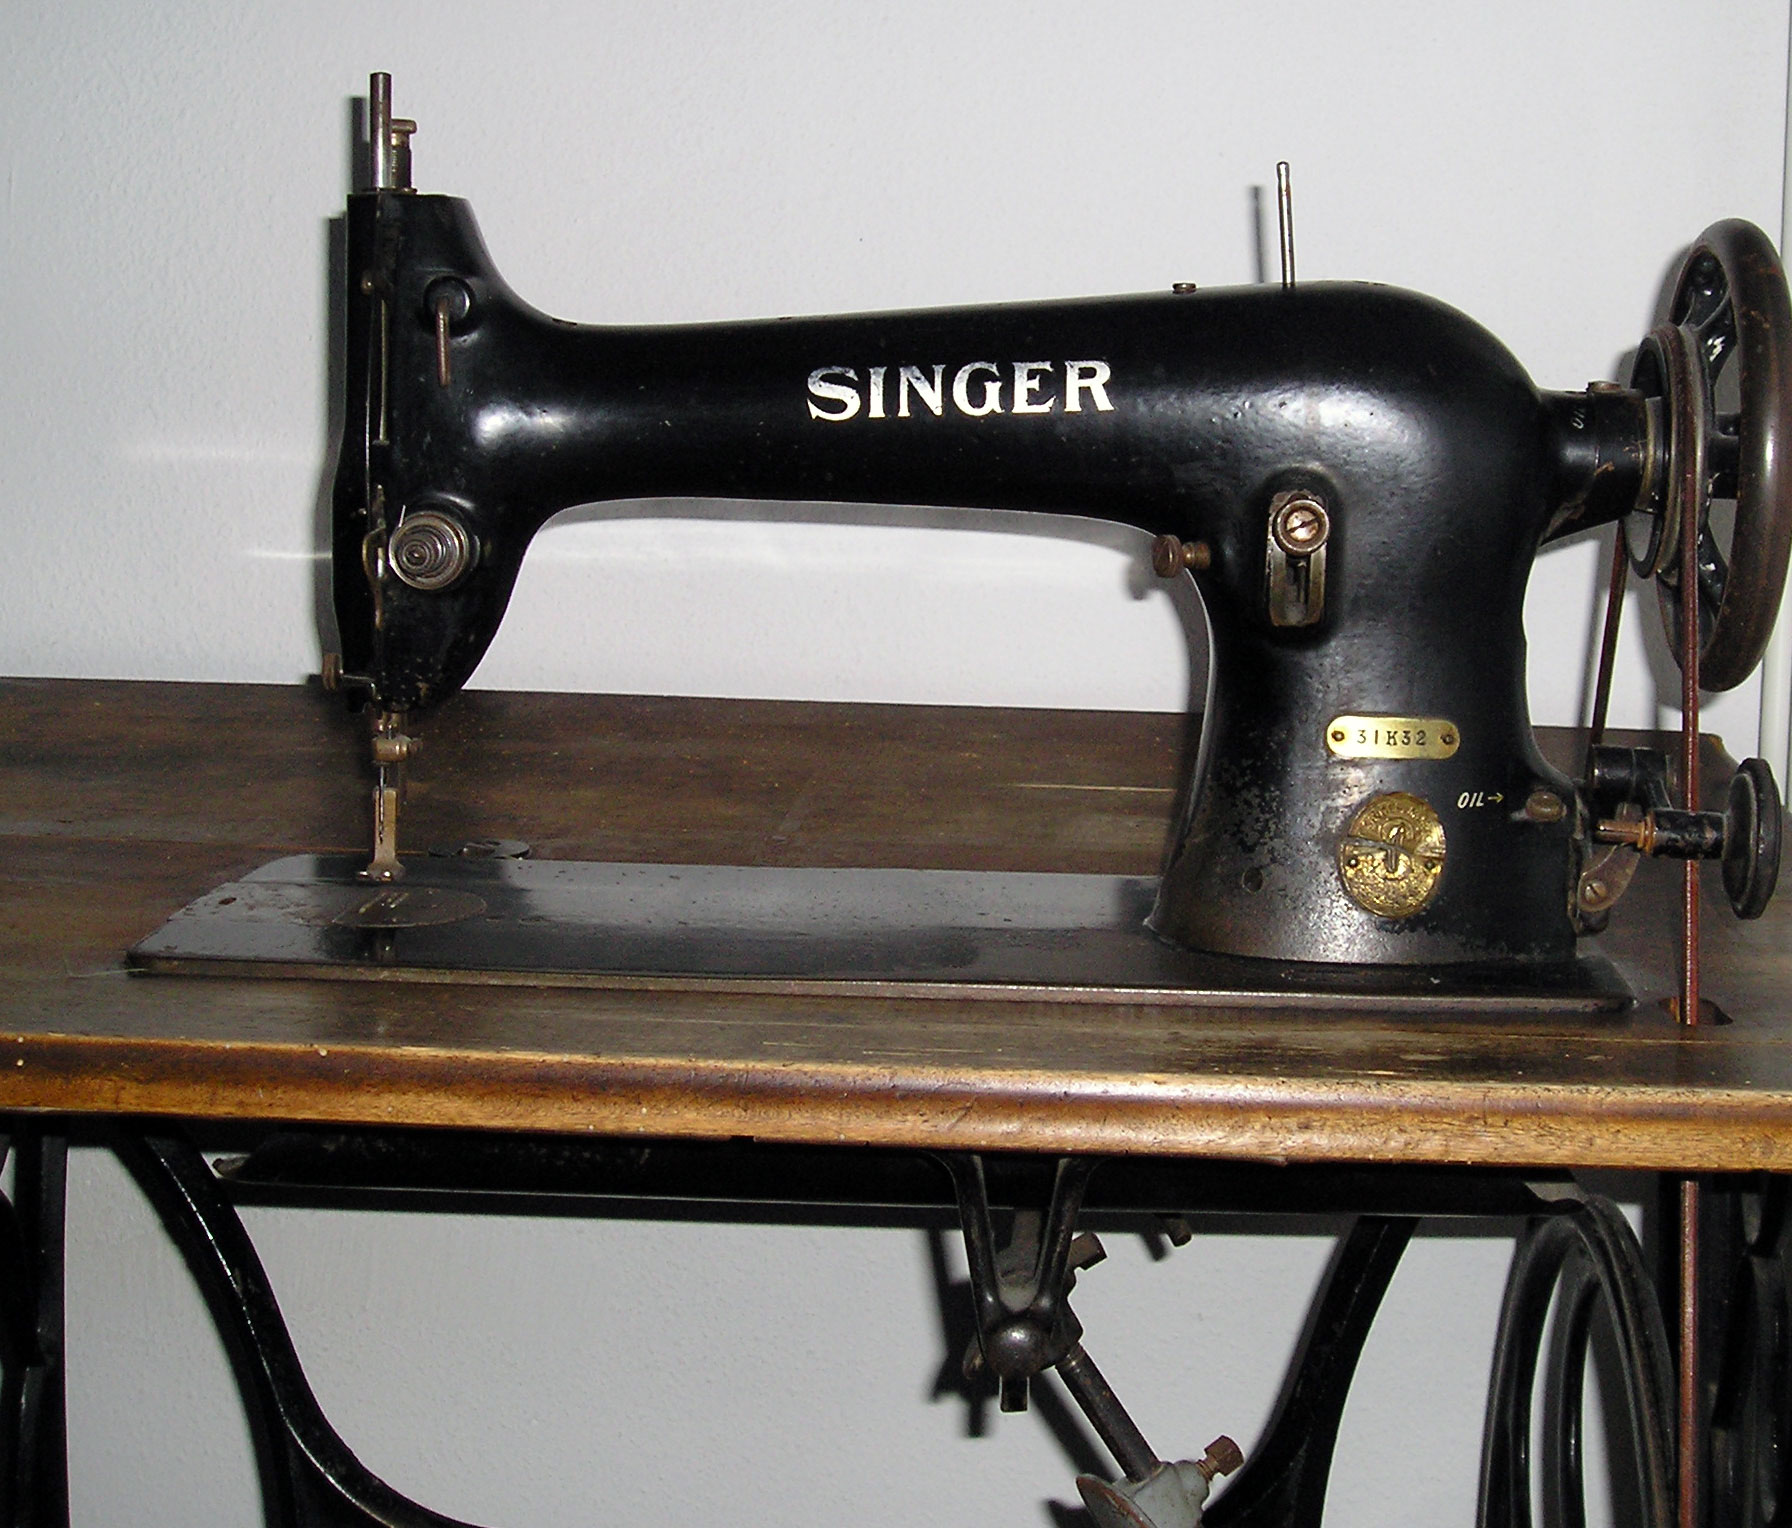 File:Singer sewing machine